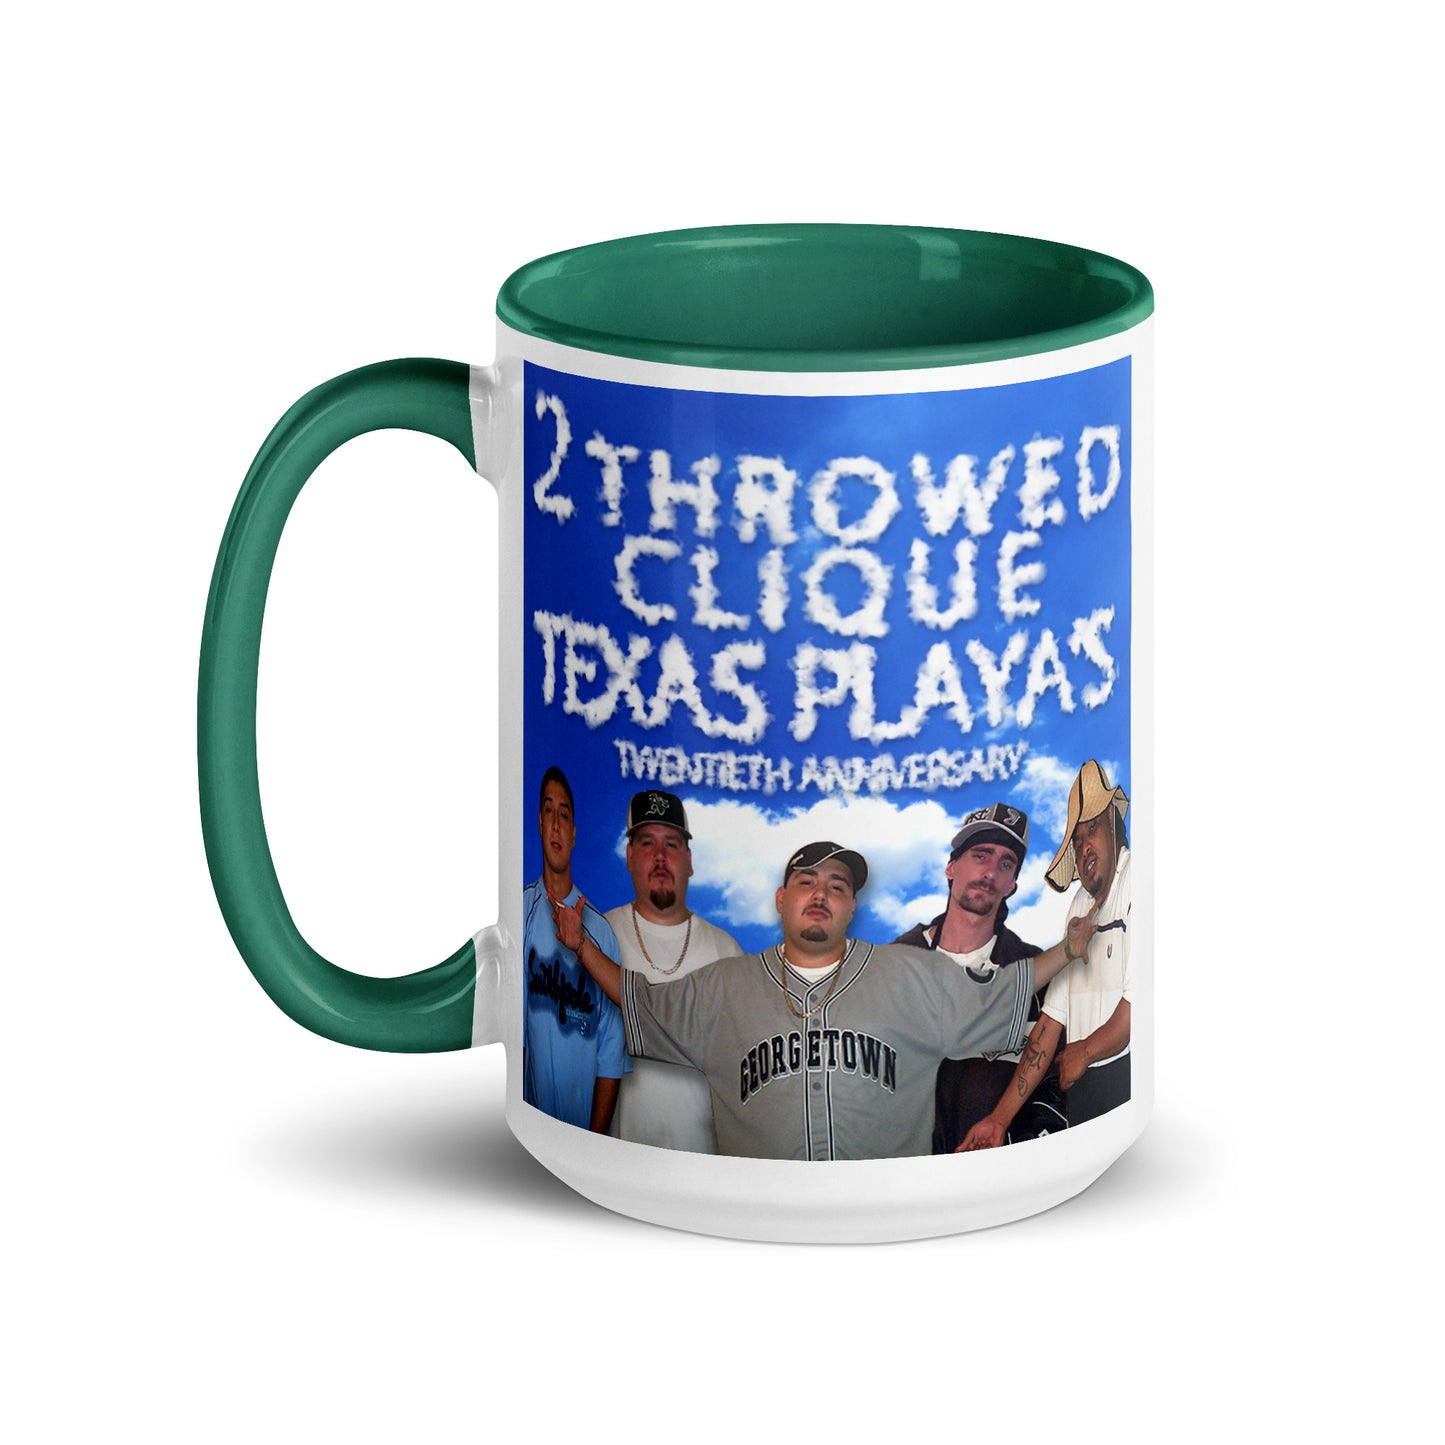 2 Throwed Clique - Texas Playas Mug With Color Inside